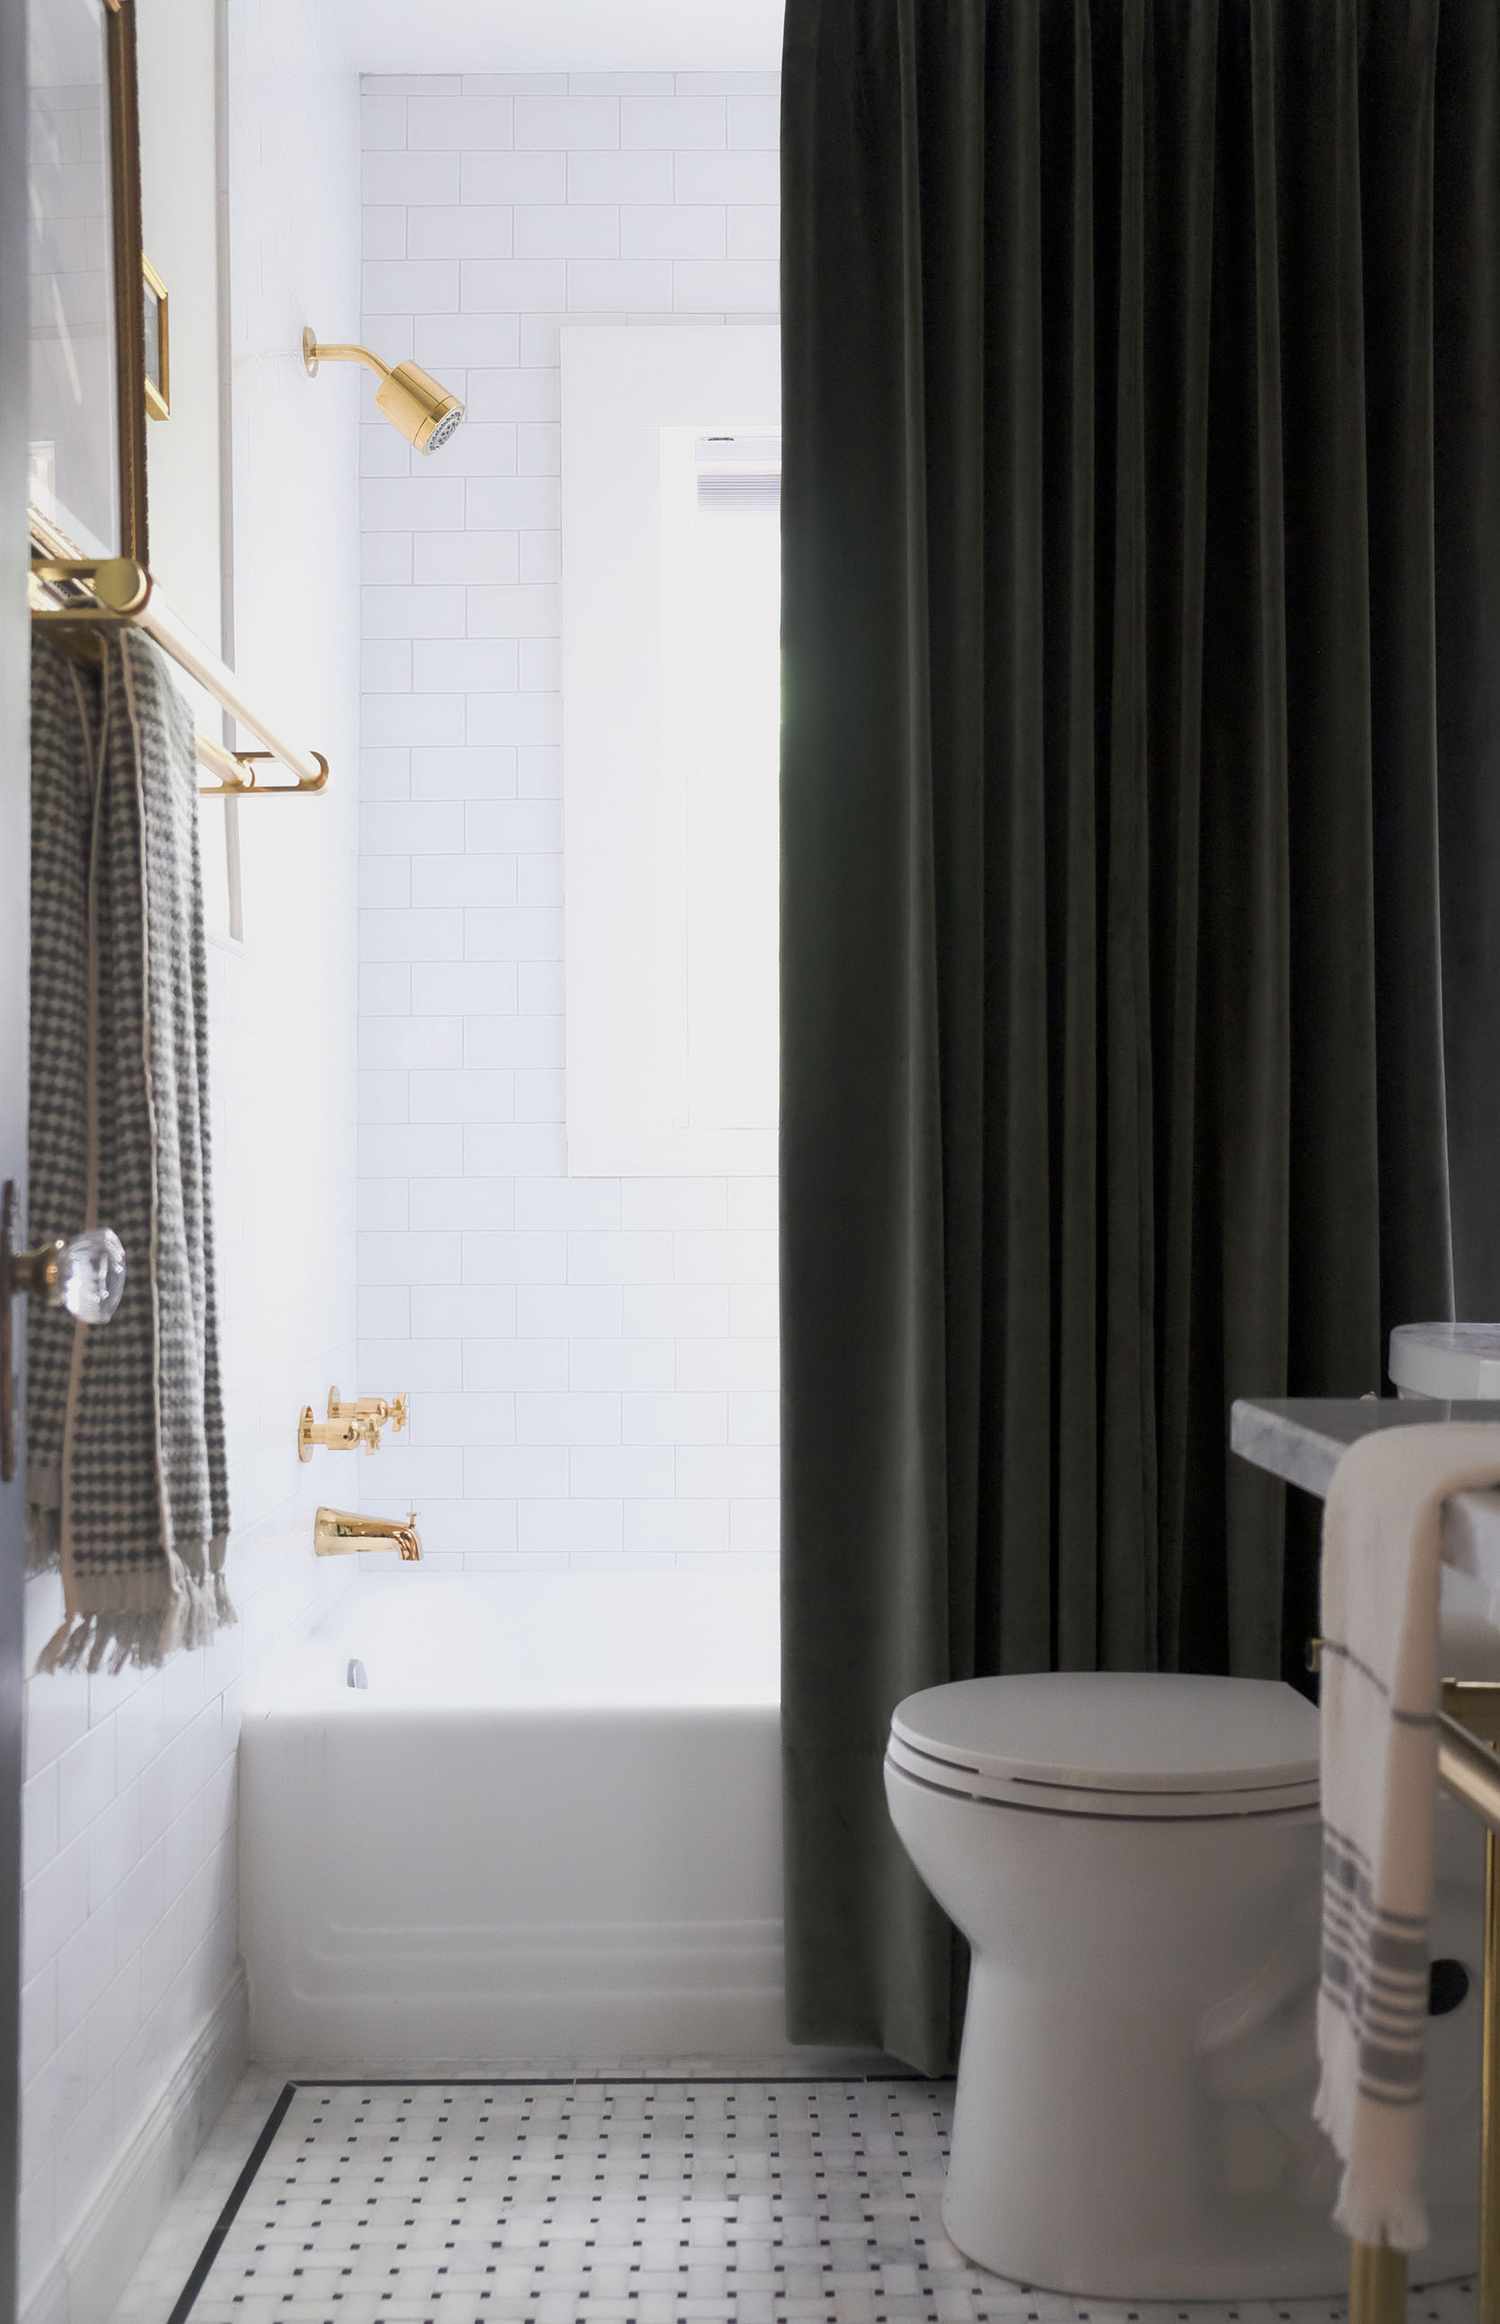 Uma cortina de chuveiro alta e escura se destaca em um banheiro quase todo branco